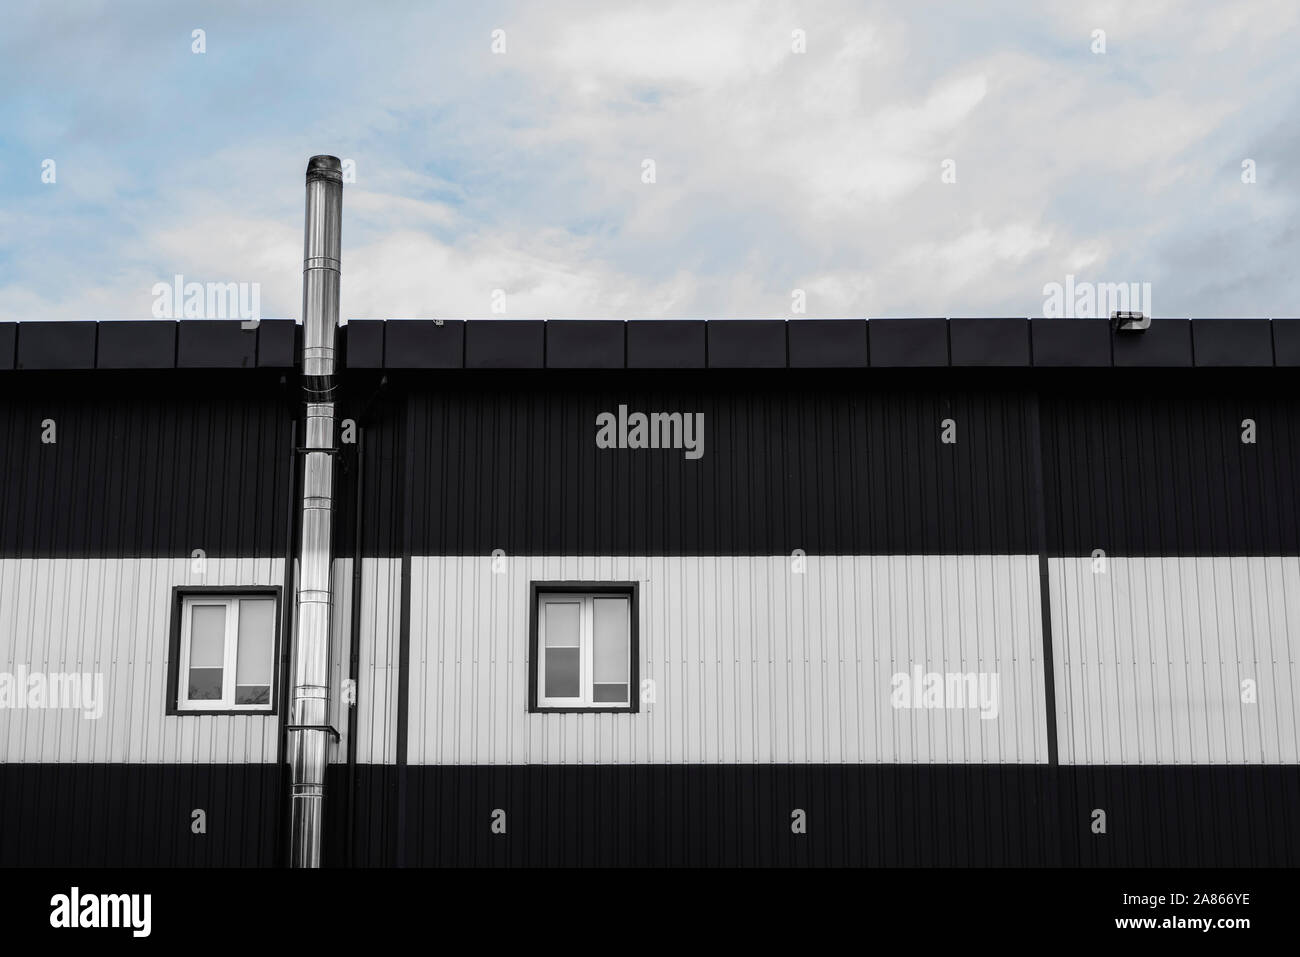 Noir et blanc surface texture feuille de métal ondulé sur la paroi d'un immeuble avec windows. Fond en acier galvaniser. Banque D'Images